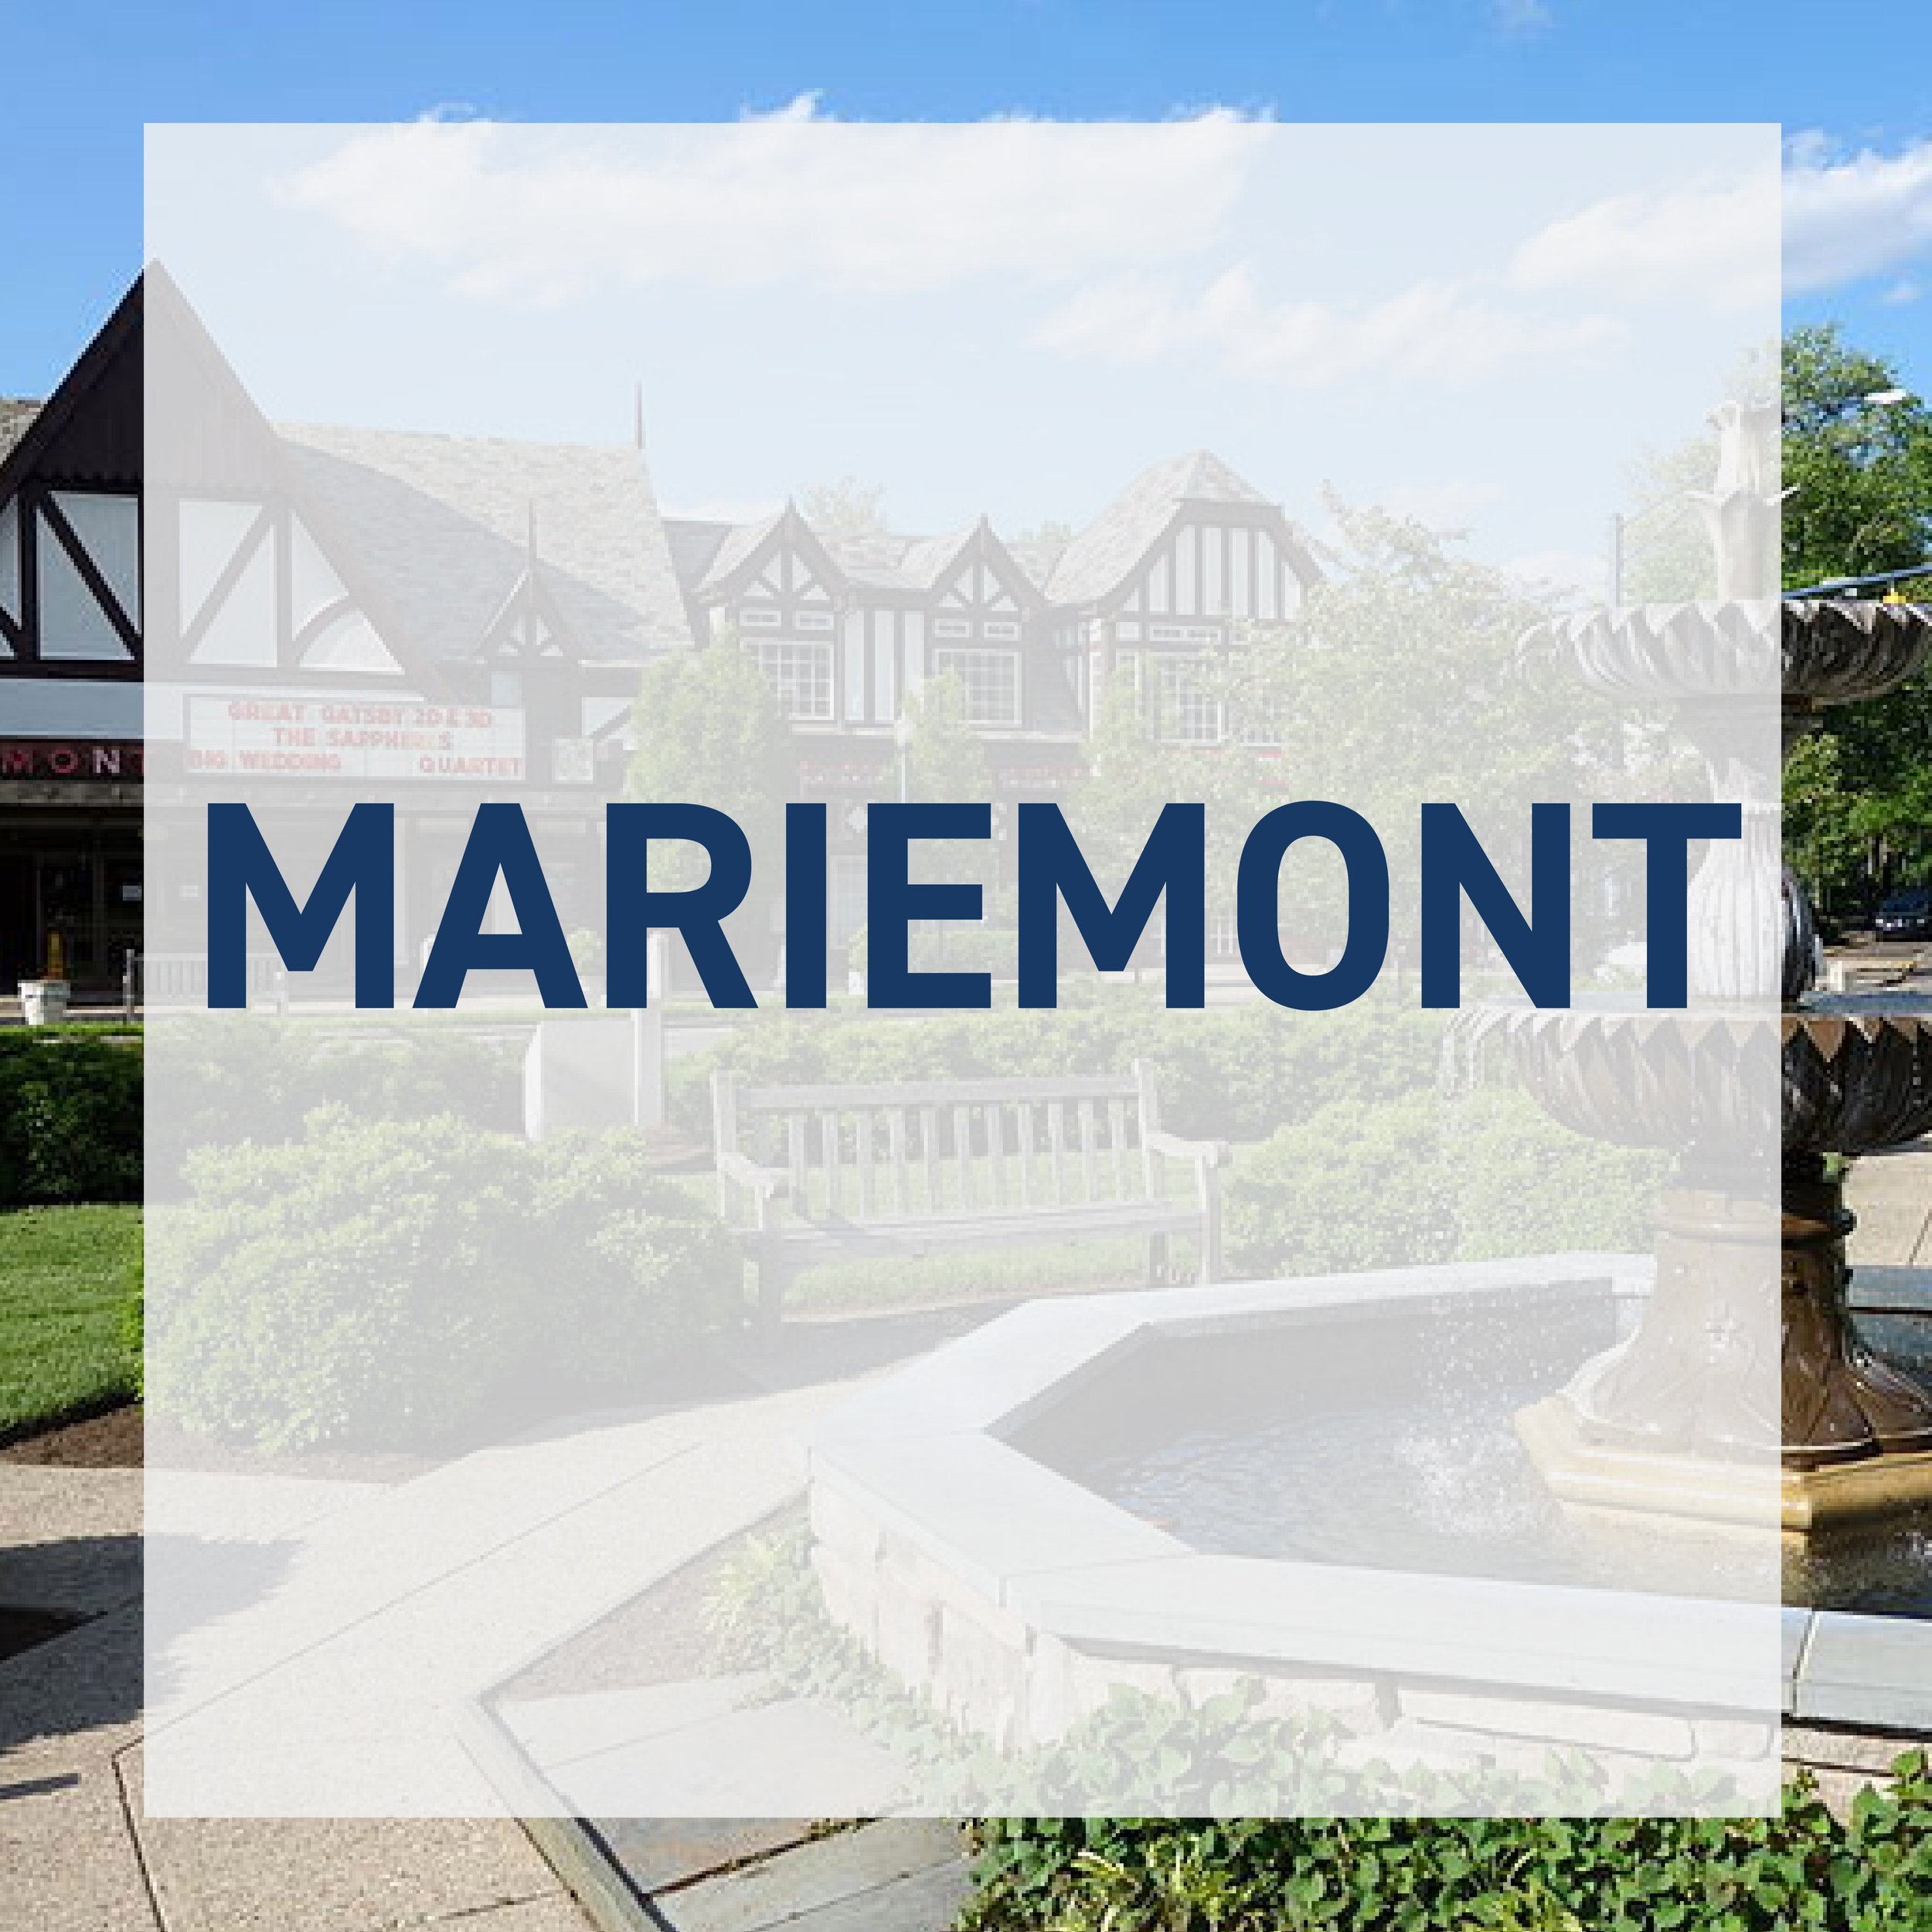 Mariemont-01.jpg